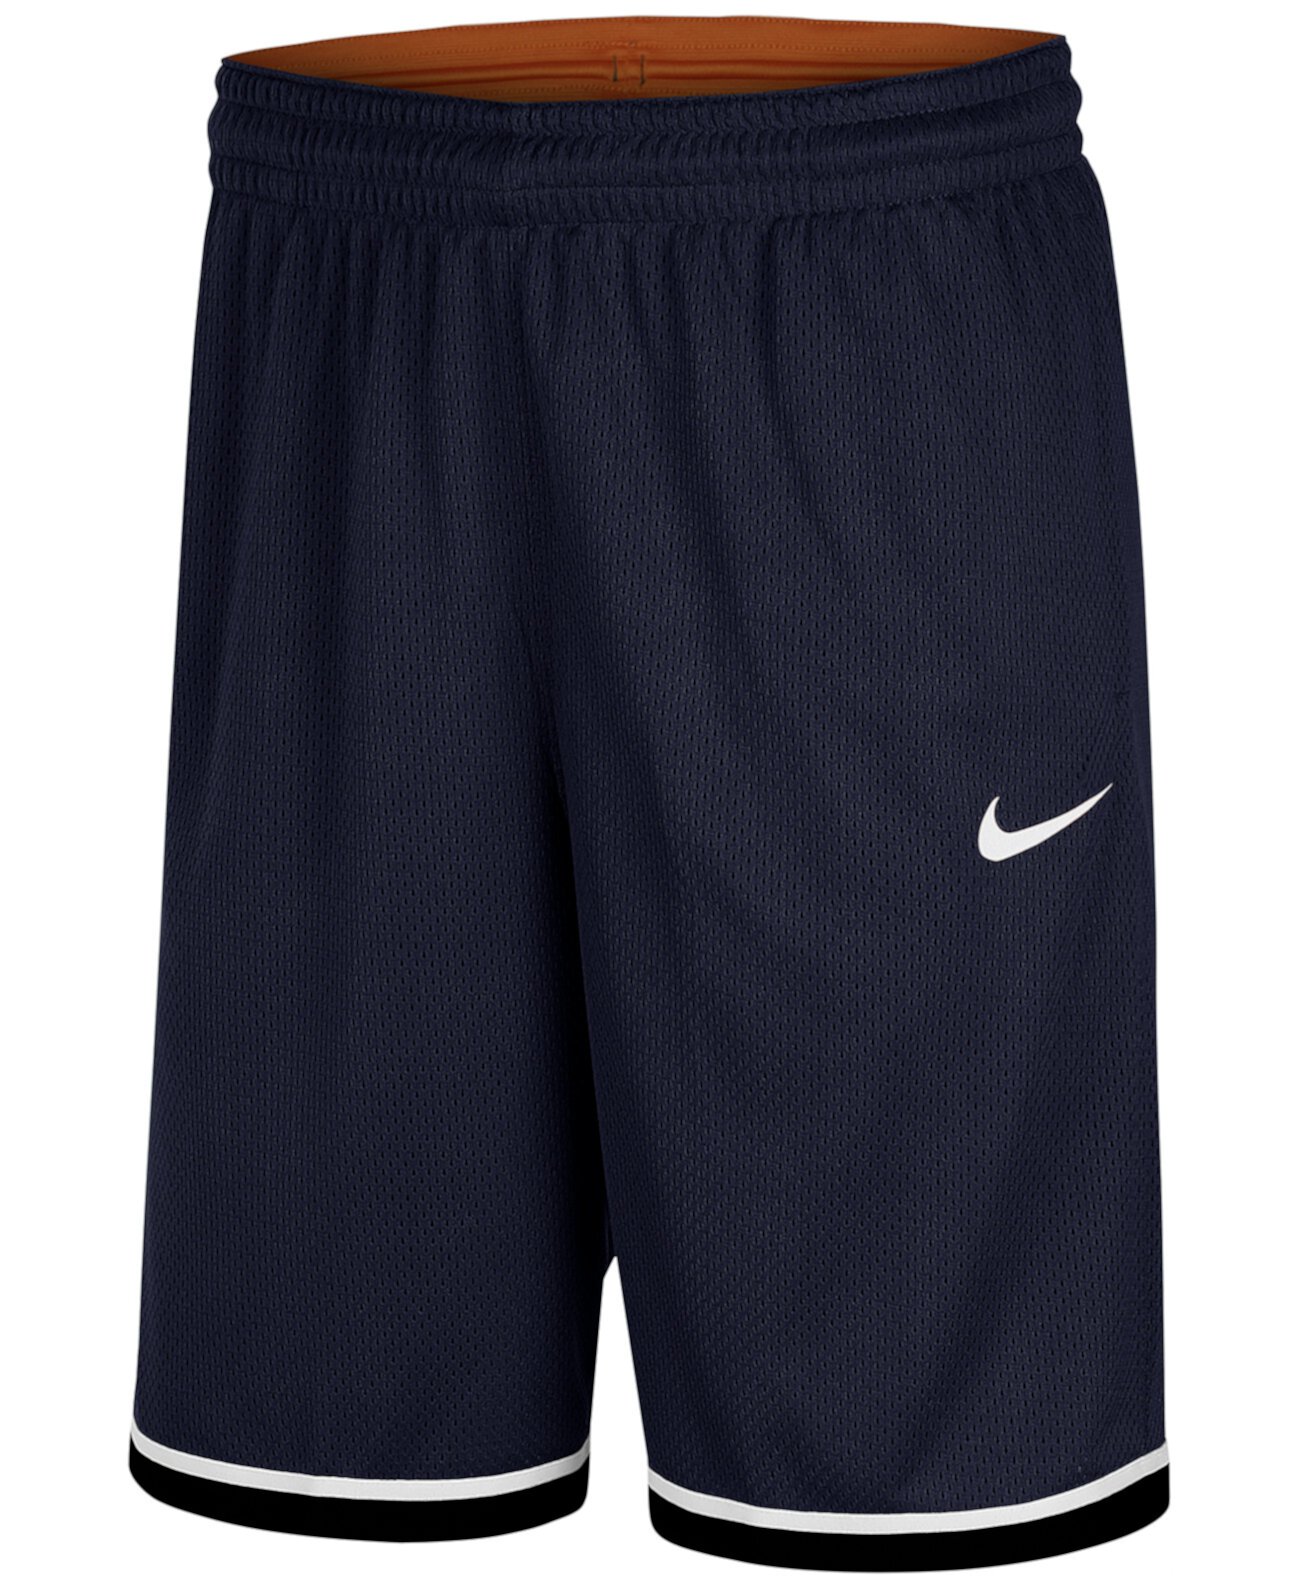 Мужские баскетбольные шорты Dri-FIT Classic Nike